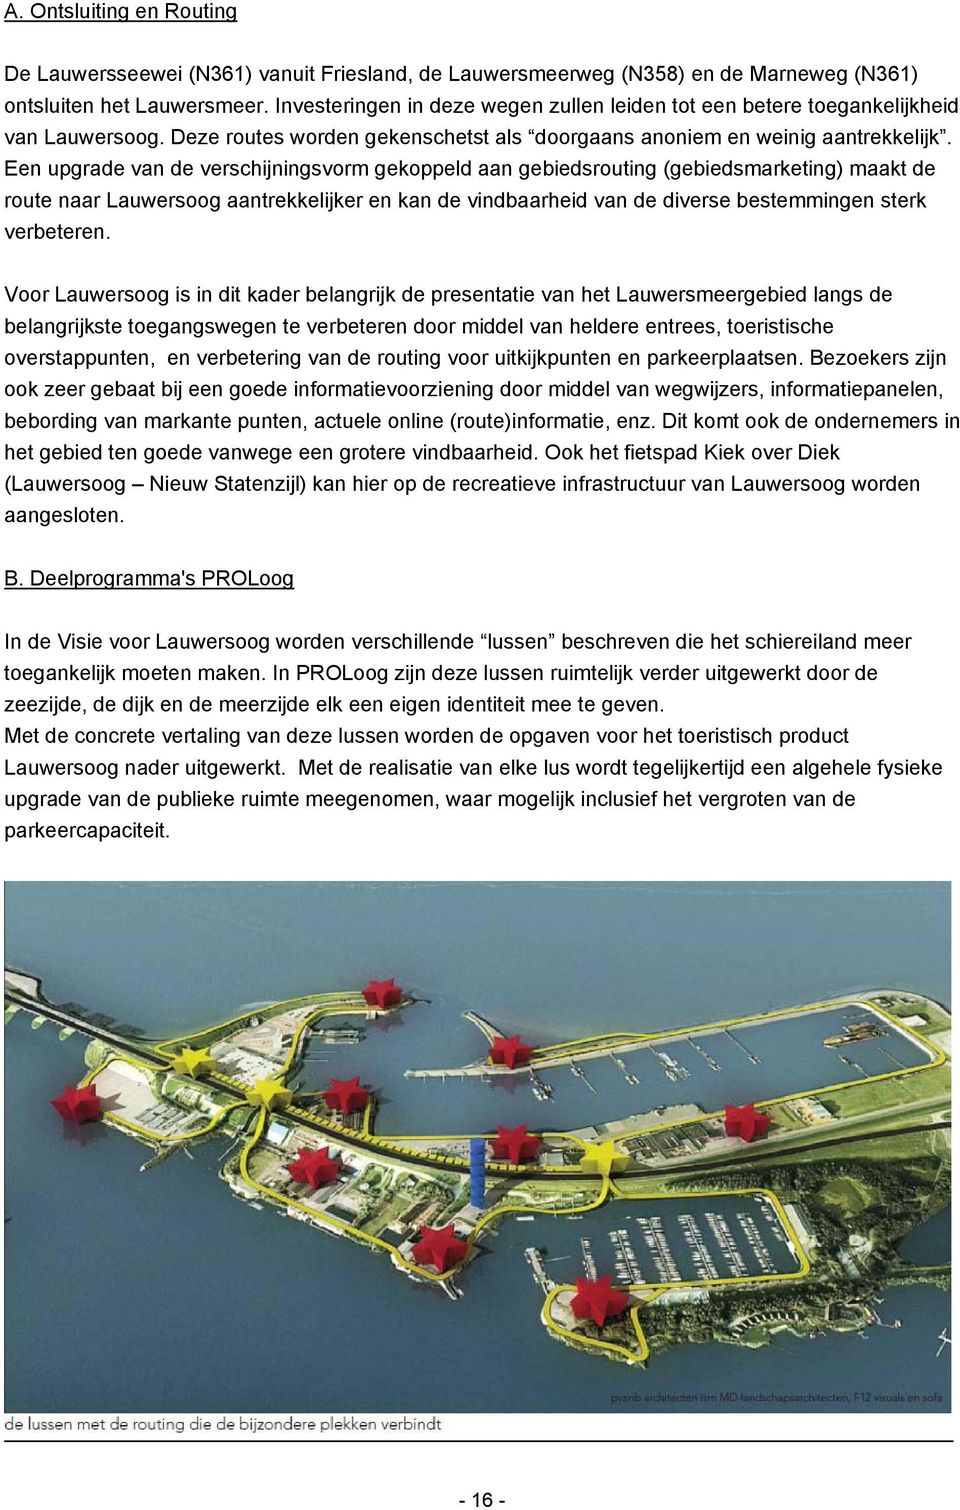 Een upgrade van de verschijningsvorm gekoppeld aan gebiedsrouting (gebiedsmarketing) maakt de route naar Lauwersoog aantrekkelijker en kan de vindbaarheid van de diverse bestemmingen sterk verbeteren.